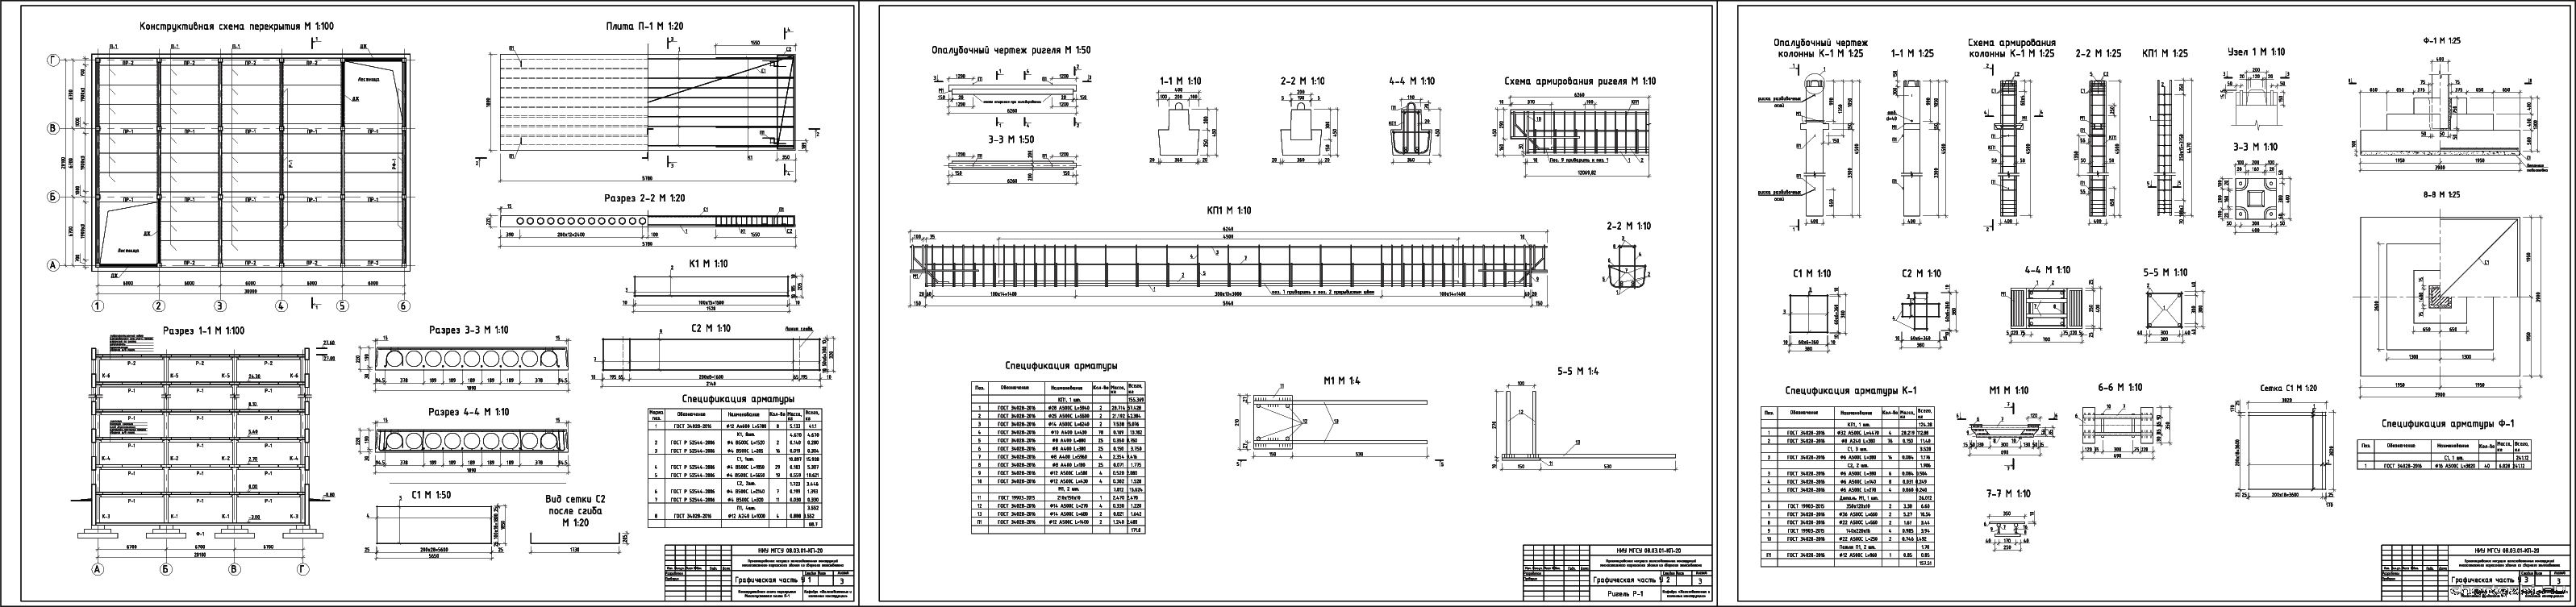 Курсовой проект - Проектирование несущих железобетонных конструкций 9-ти этажного каркасного здания из сборного железобетона 20,1 х 30,0 м в г. Вологда